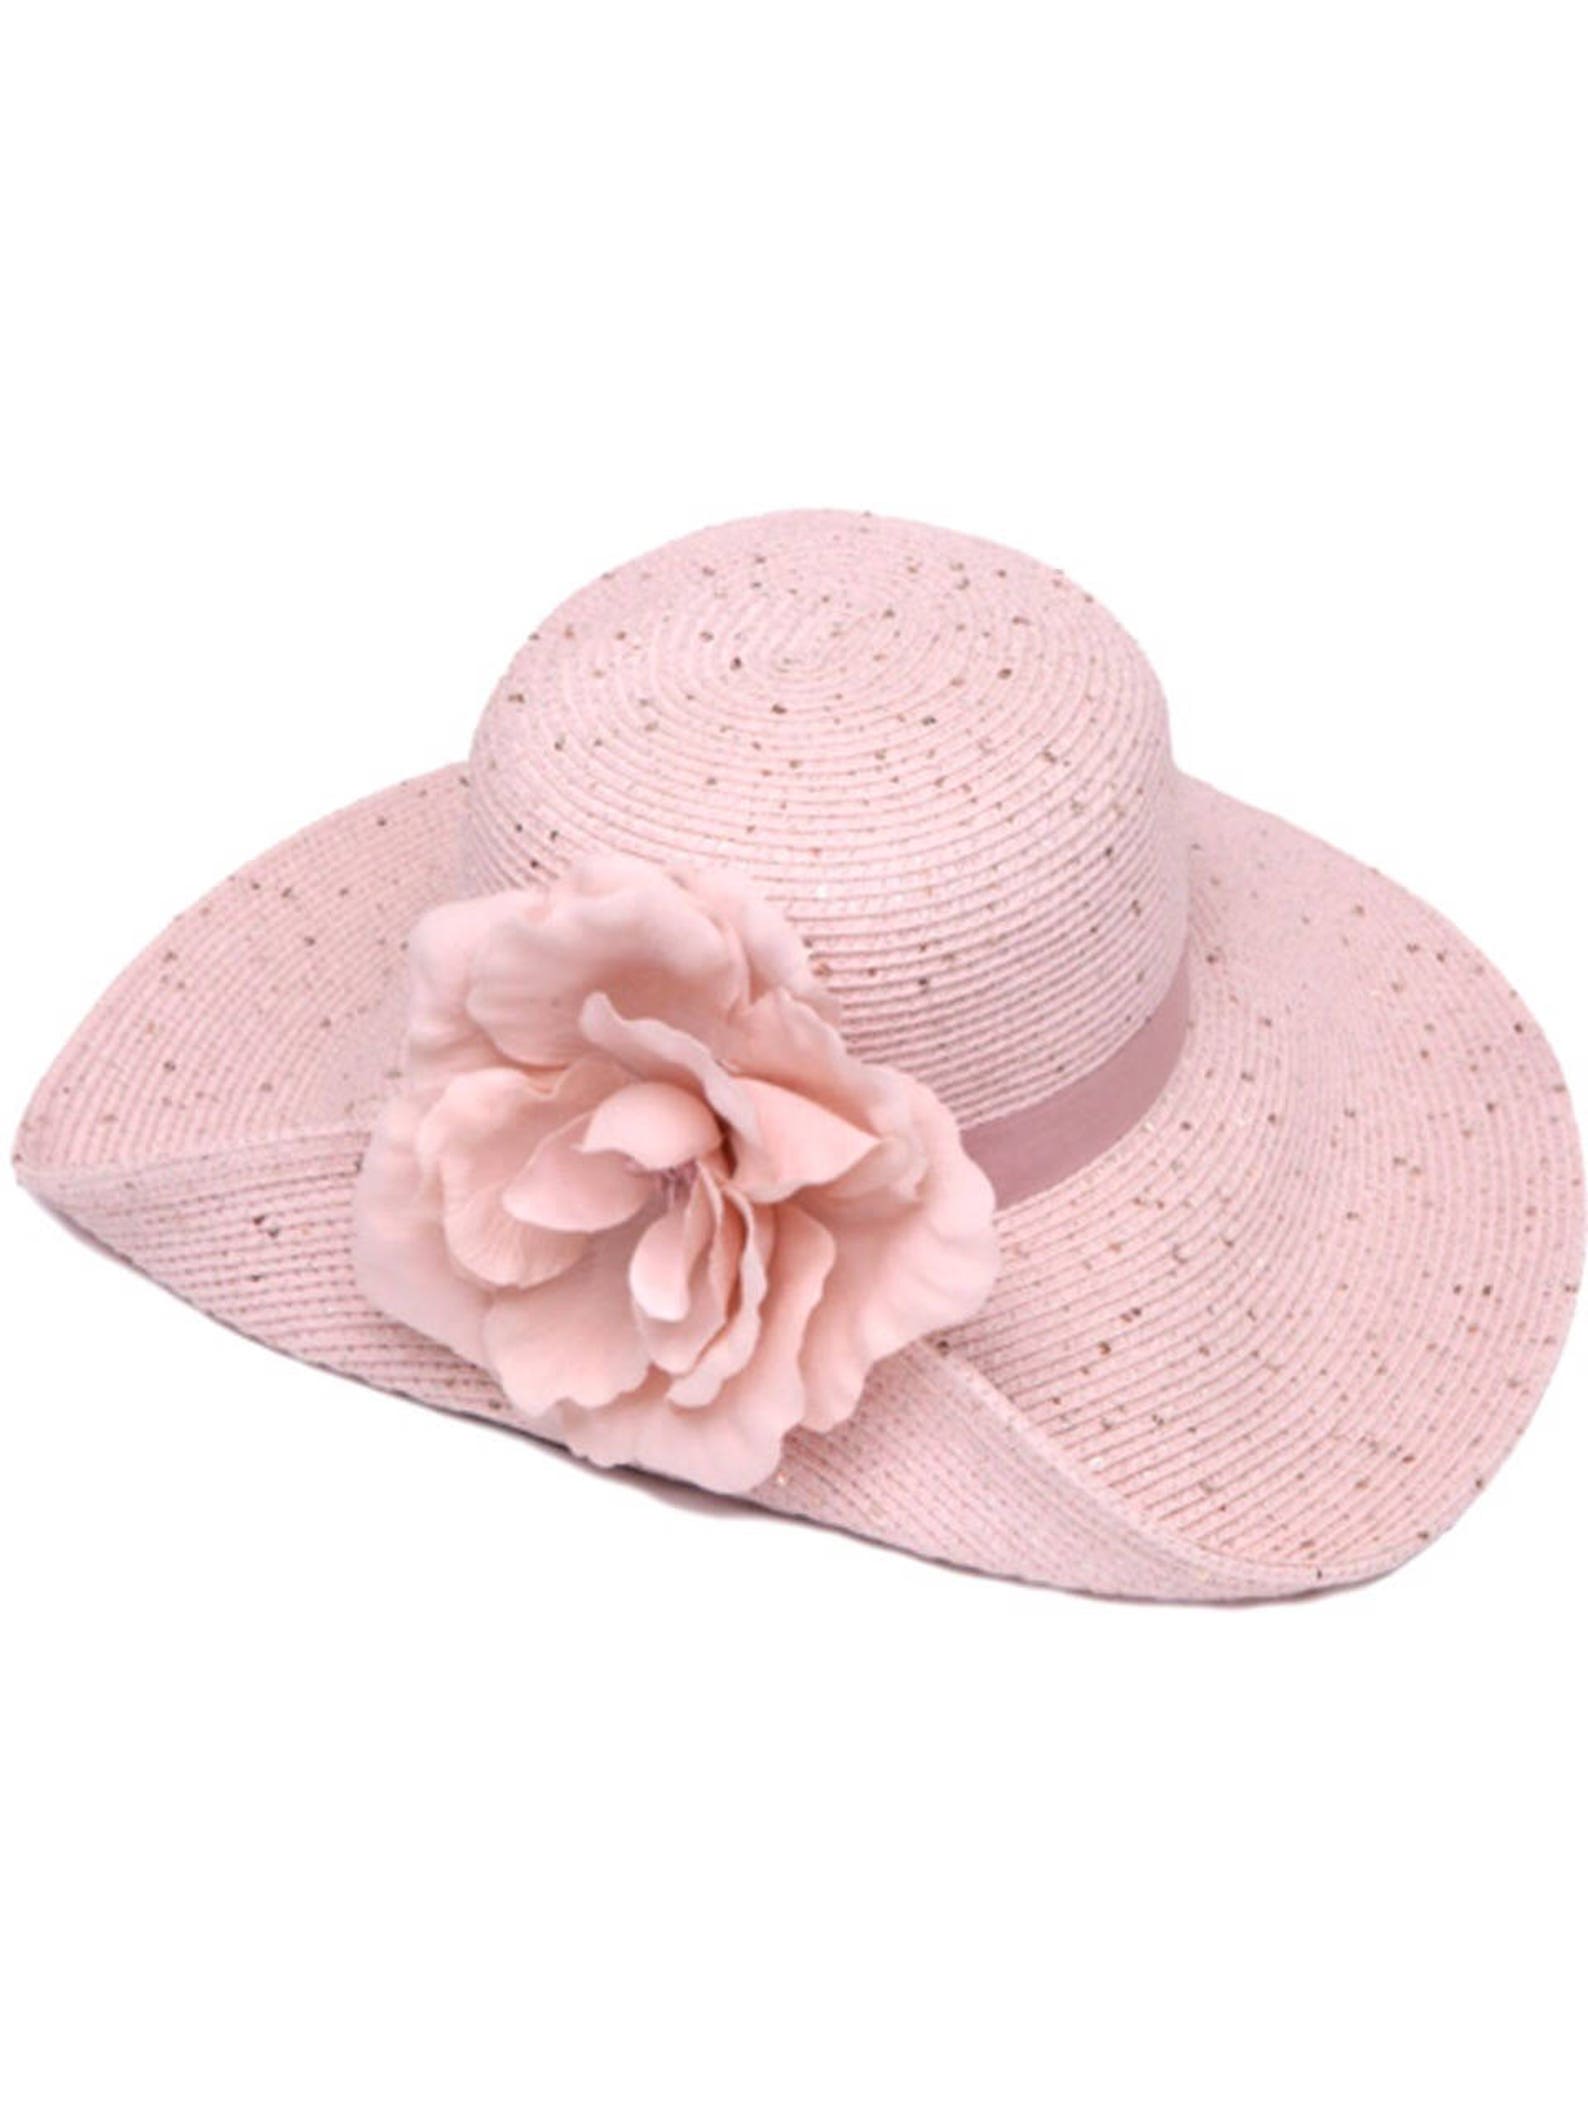 Womens Sun Hat Pink hat Straw Hat Sun Hat Wide Brim Hat Womens | Etsy